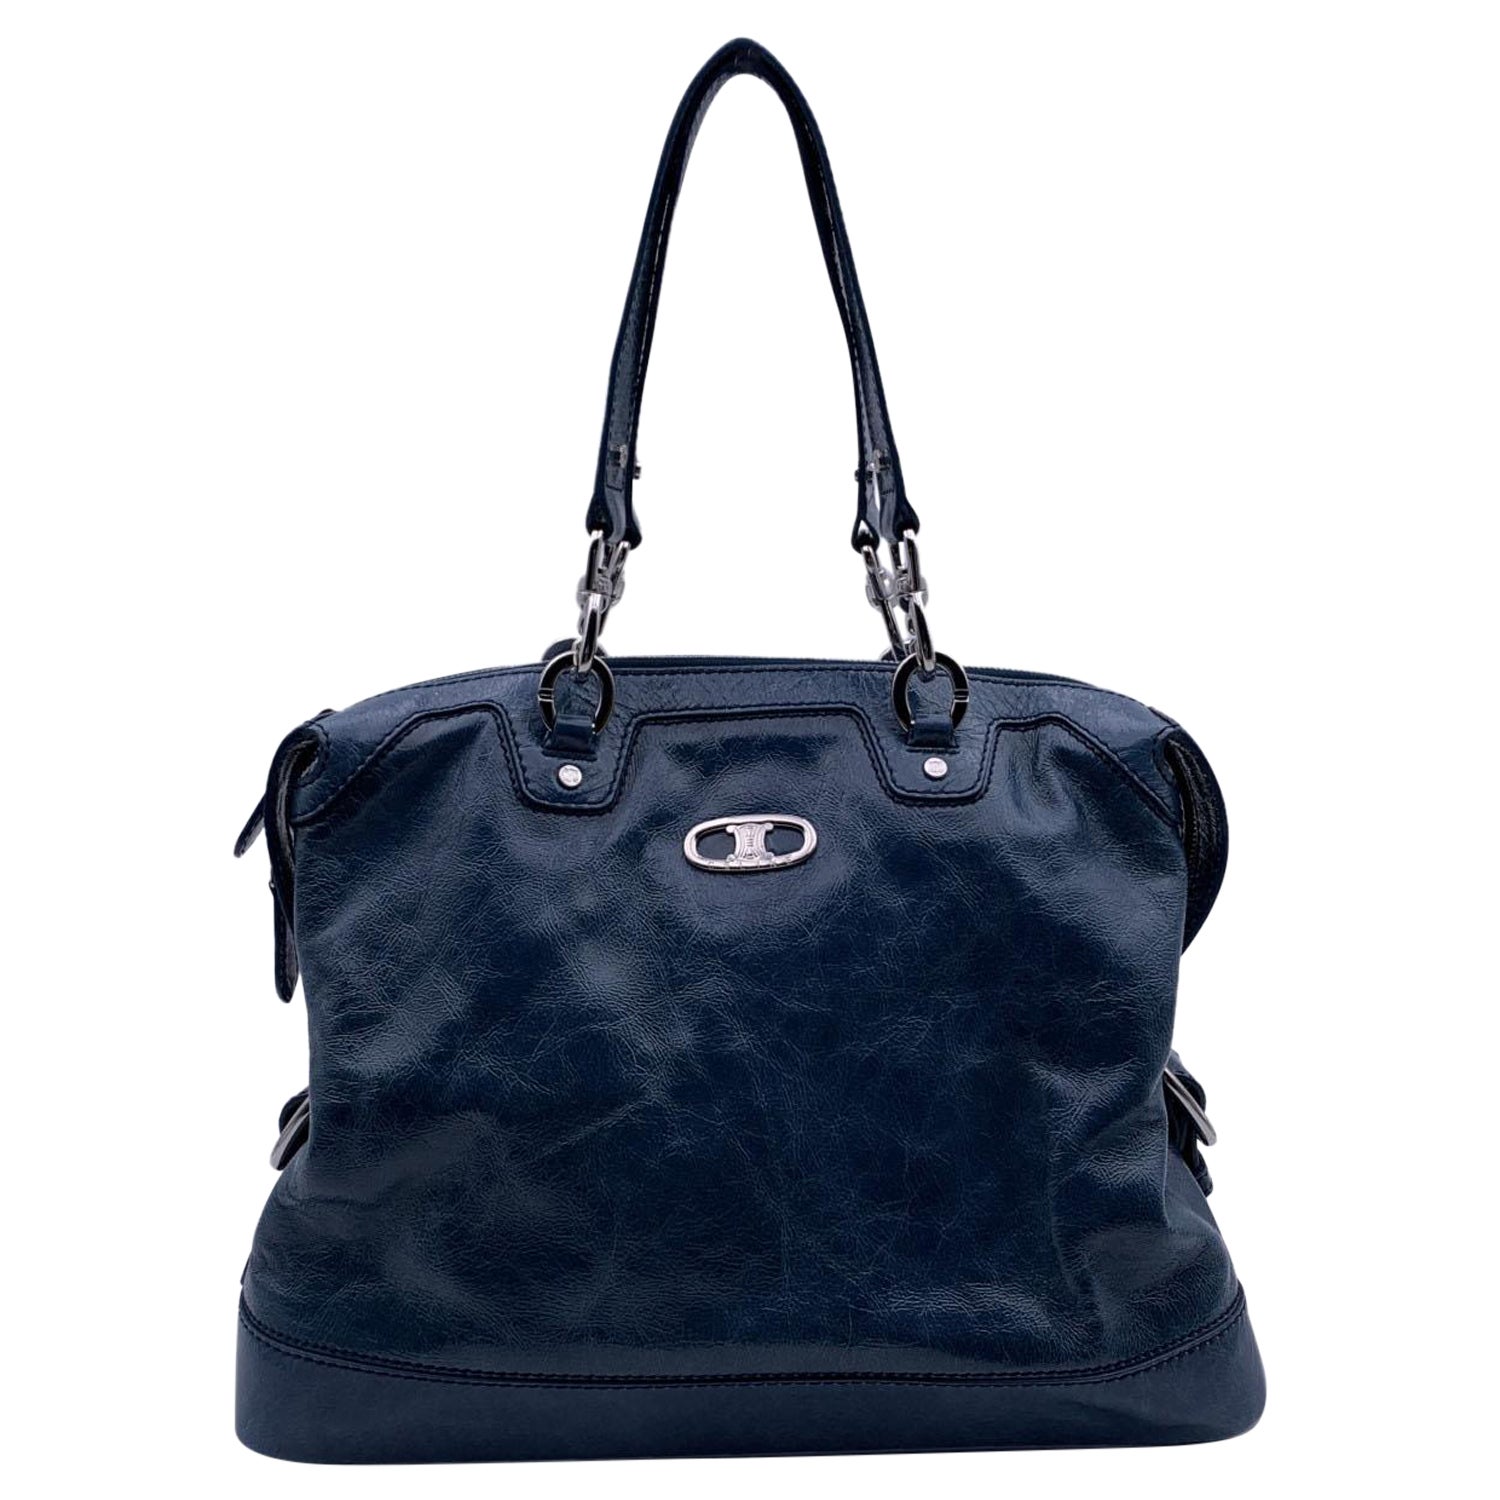 Celine Bluette Patent Leather Tote Shoulder Bag Handbag